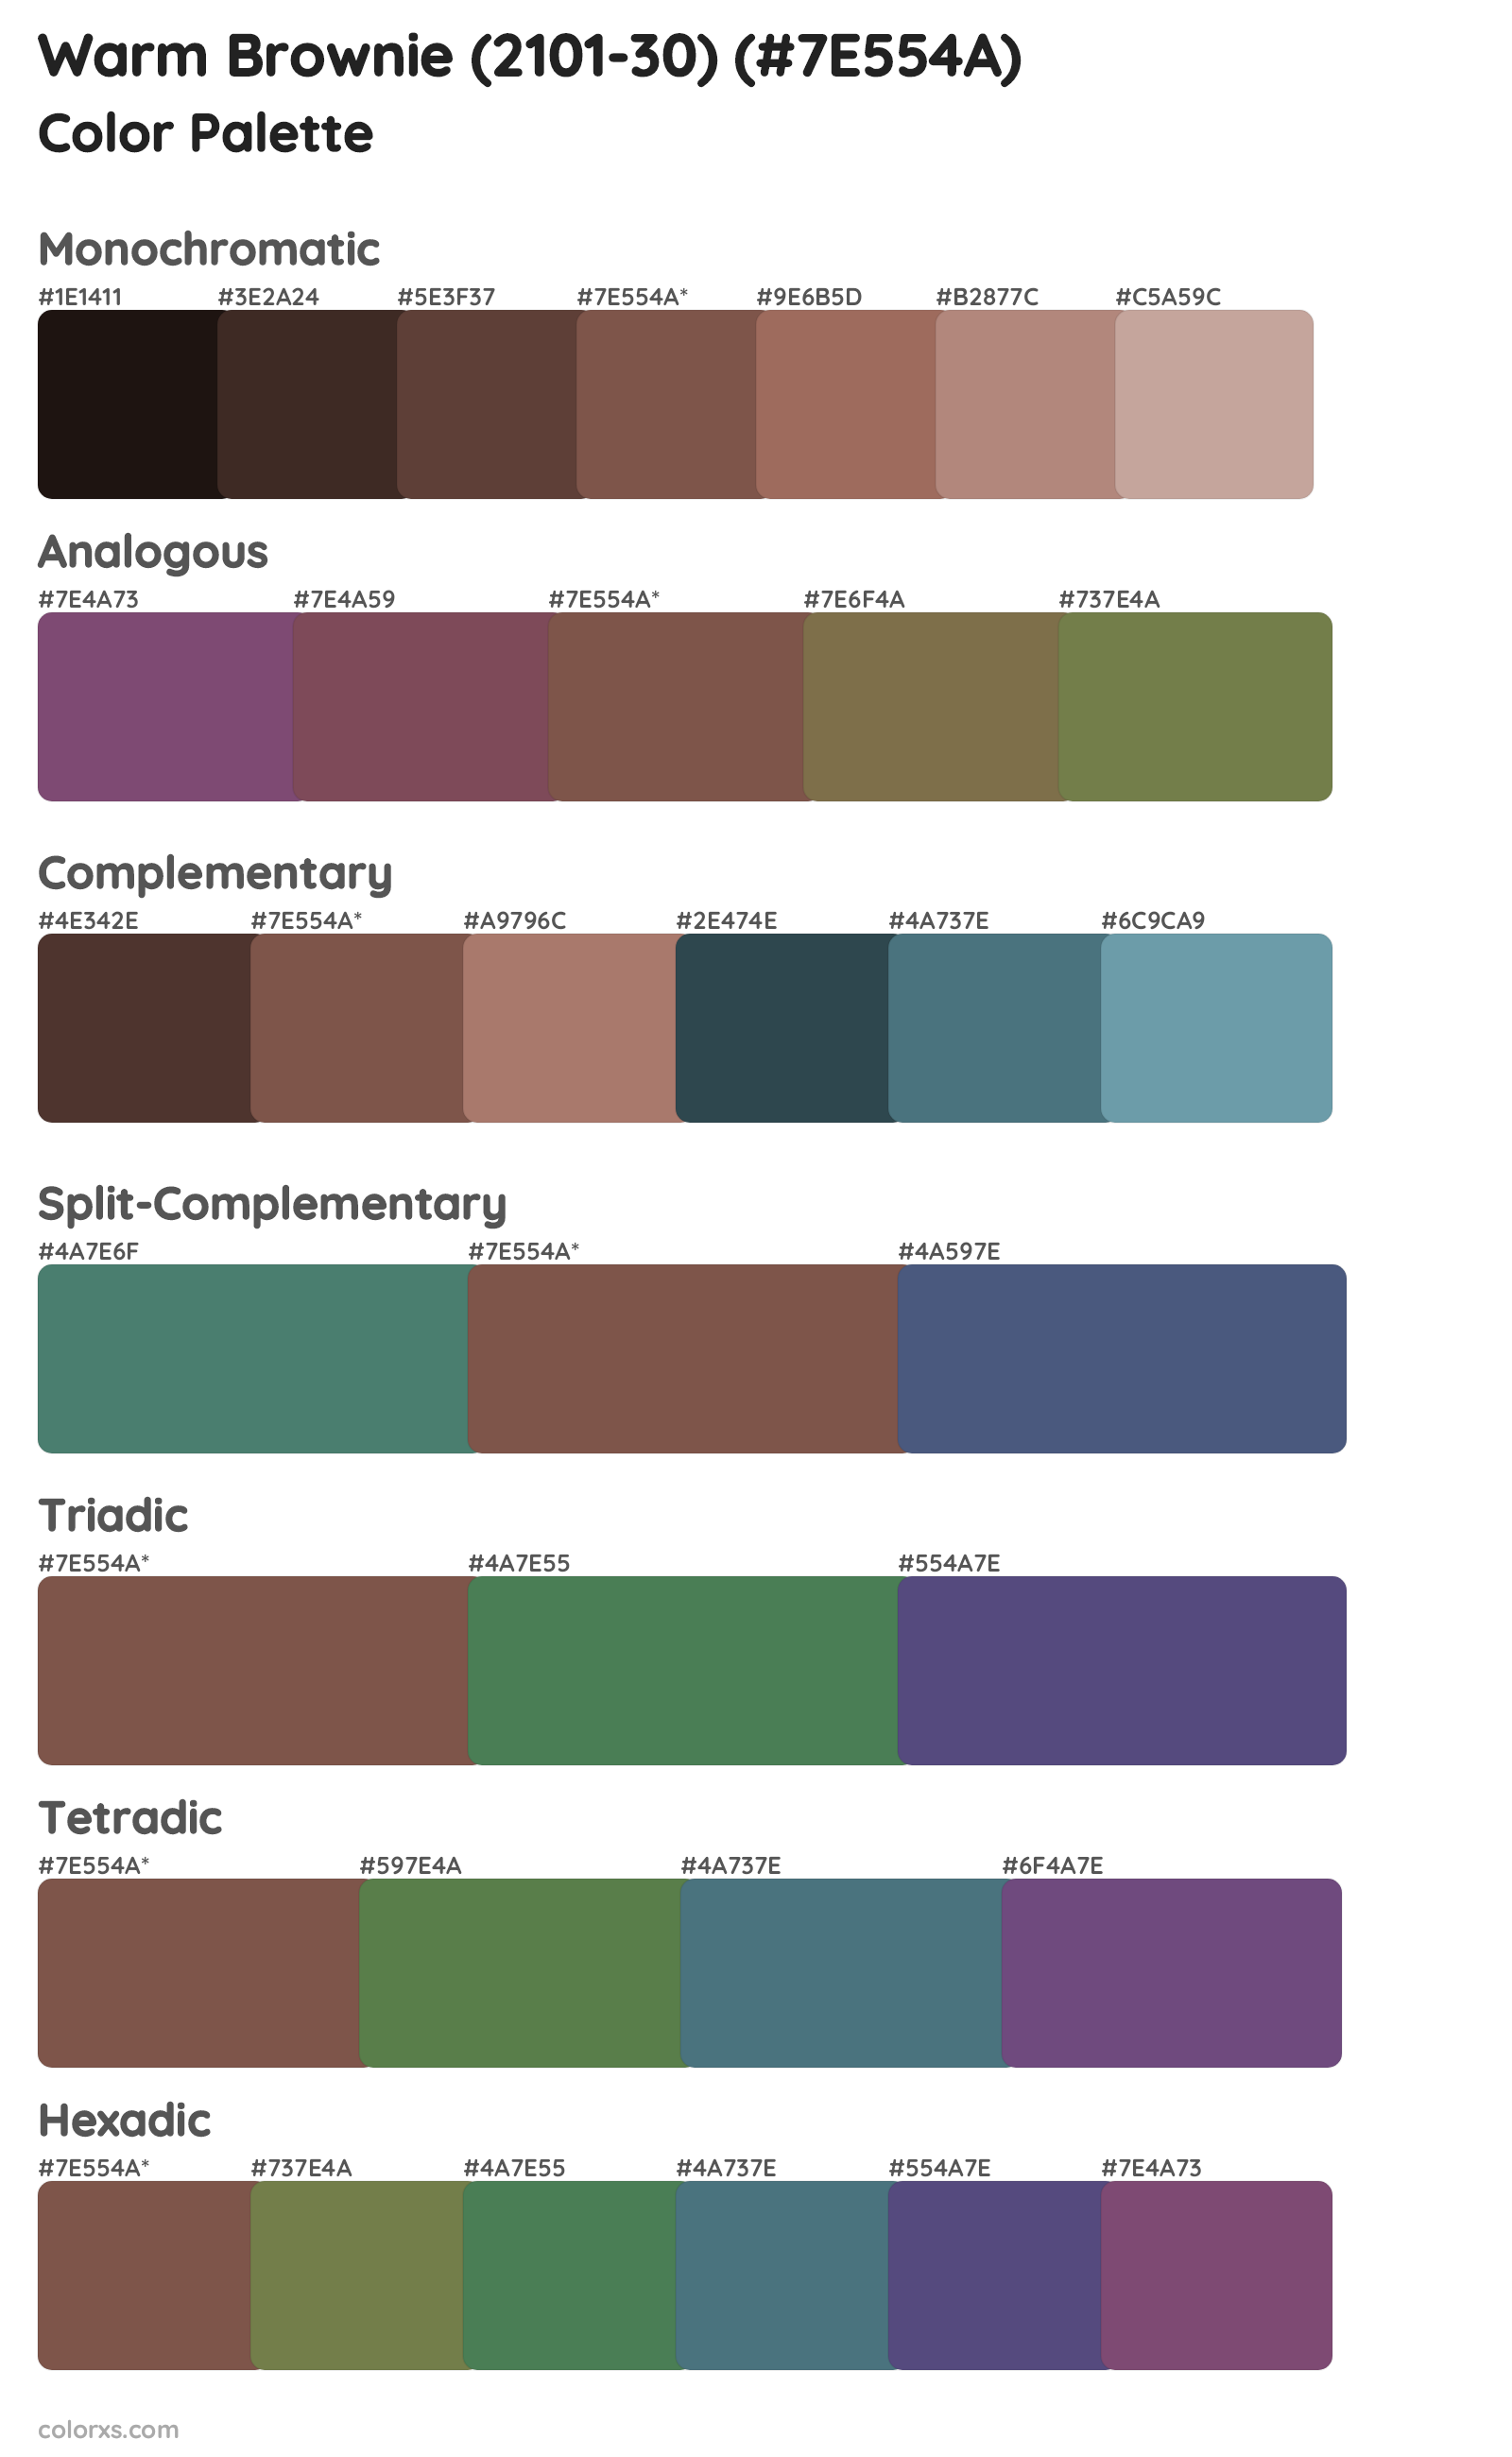 Warm Brownie (2101-30) Color Scheme Palettes